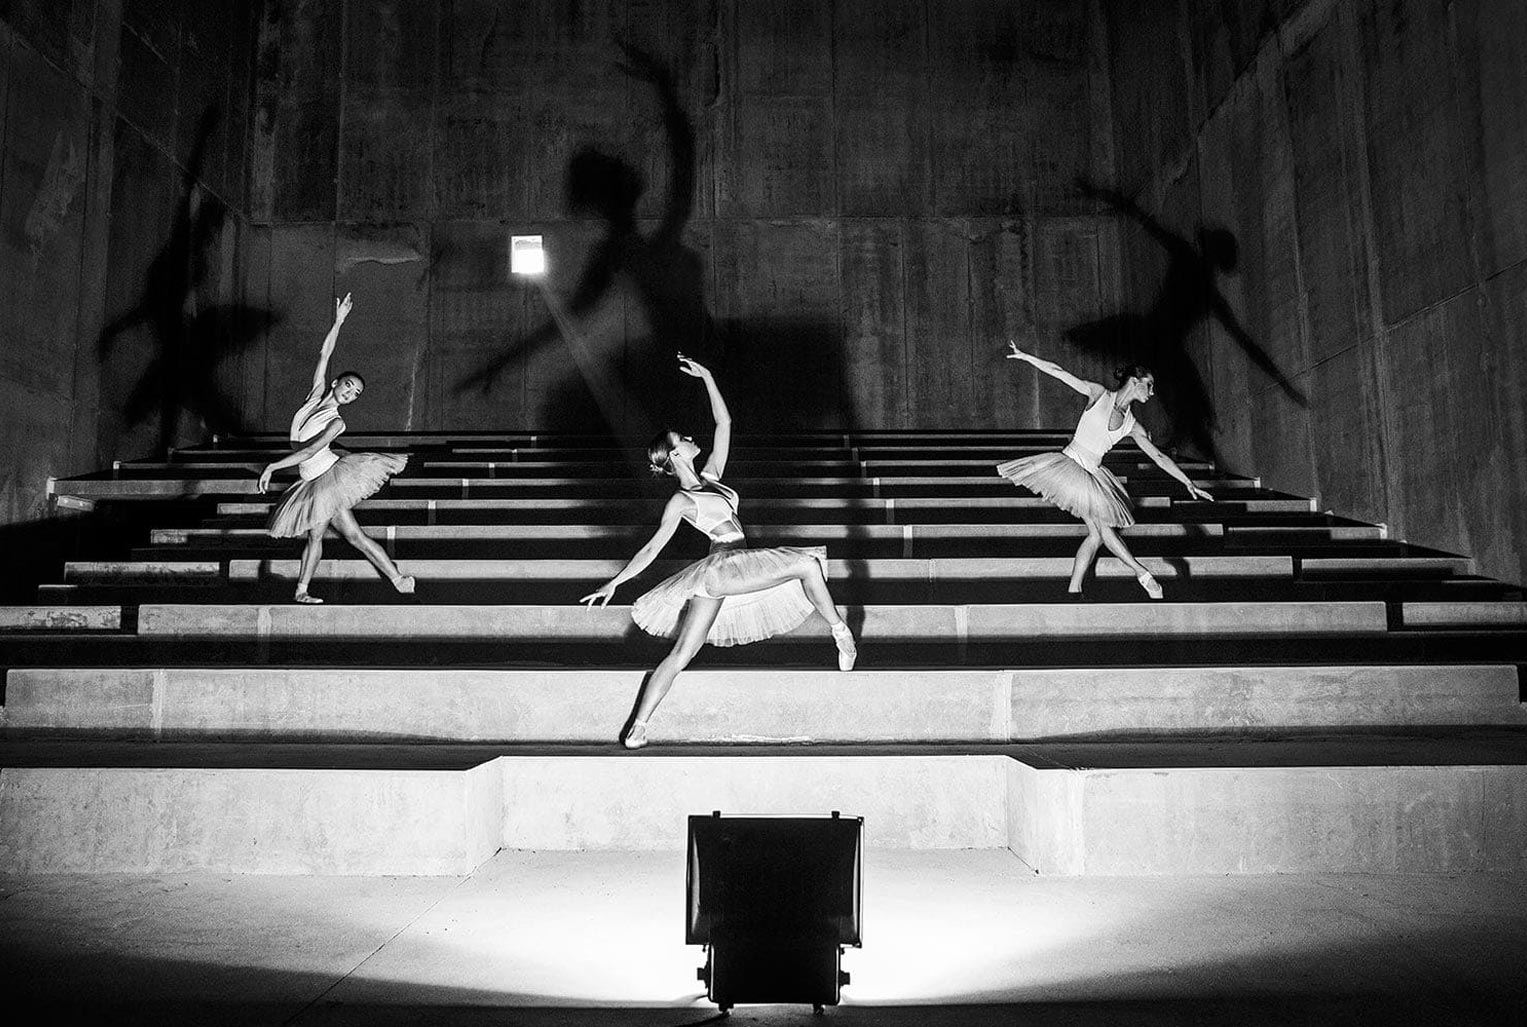 InPosnania project / Poznan Ballet Dancers by Szymon Brodziak